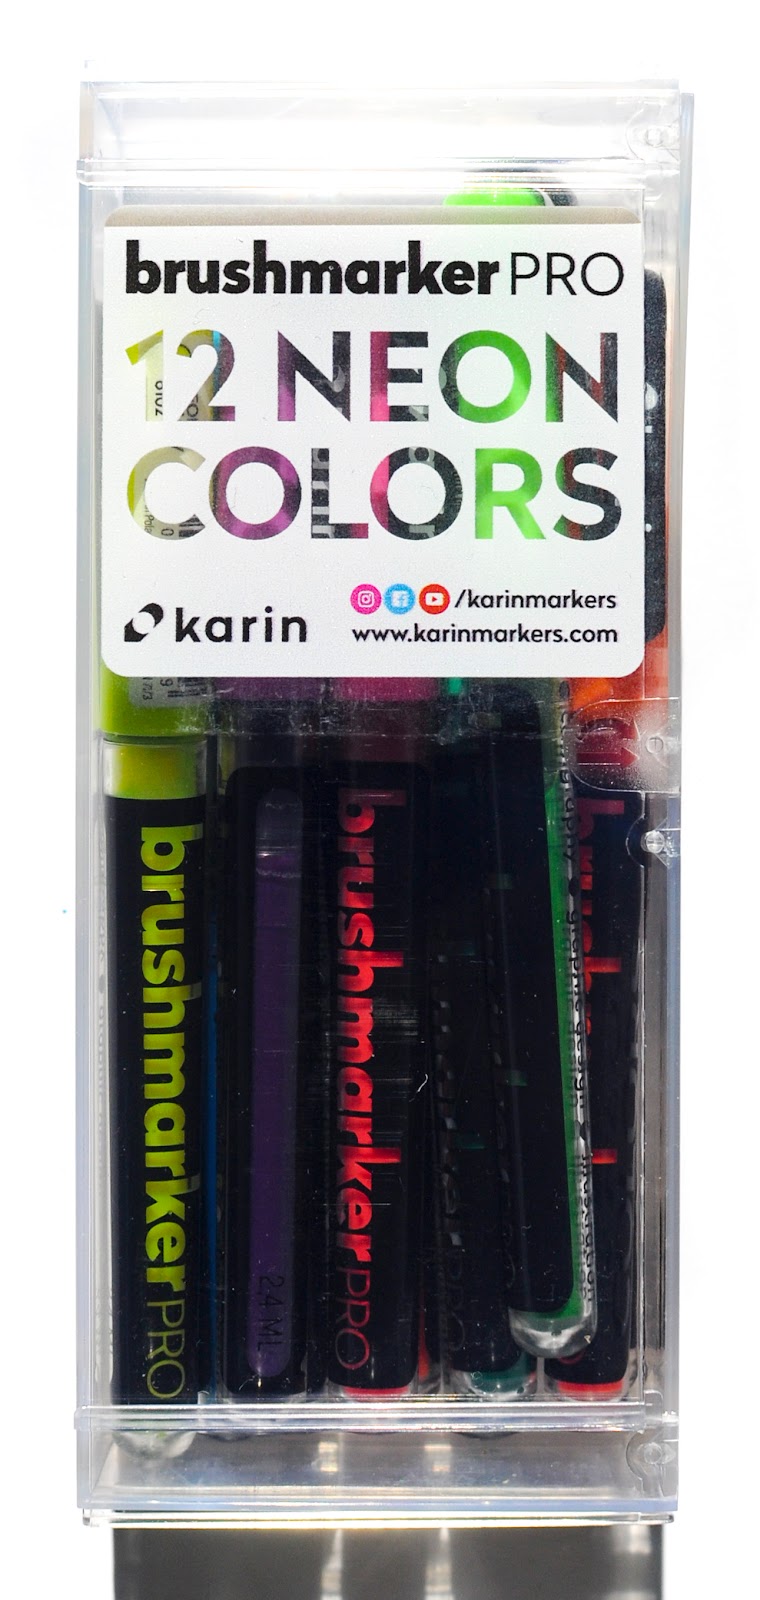 karin Brushmarker PRO Set of 12 Sun & Tree Colors - John Neal Books